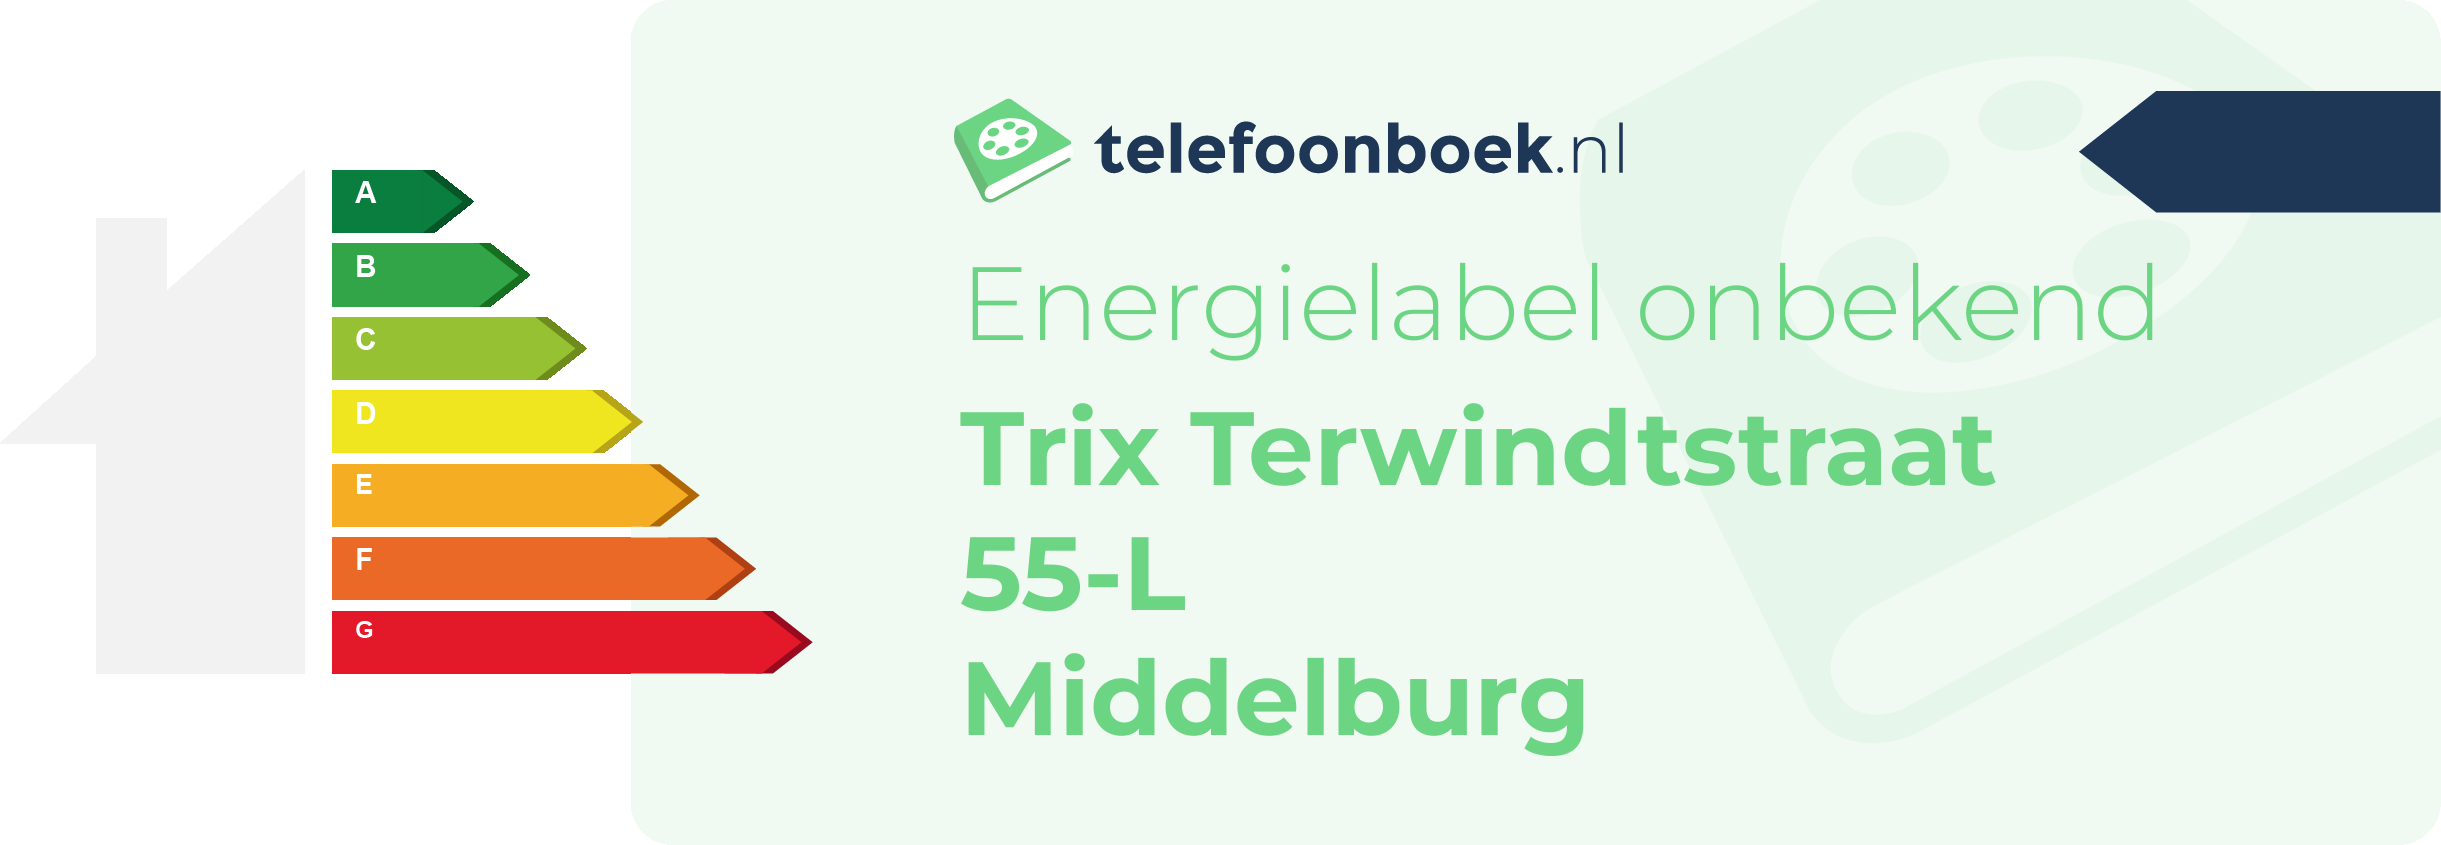 Energielabel Trix Terwindtstraat 55-L Middelburg